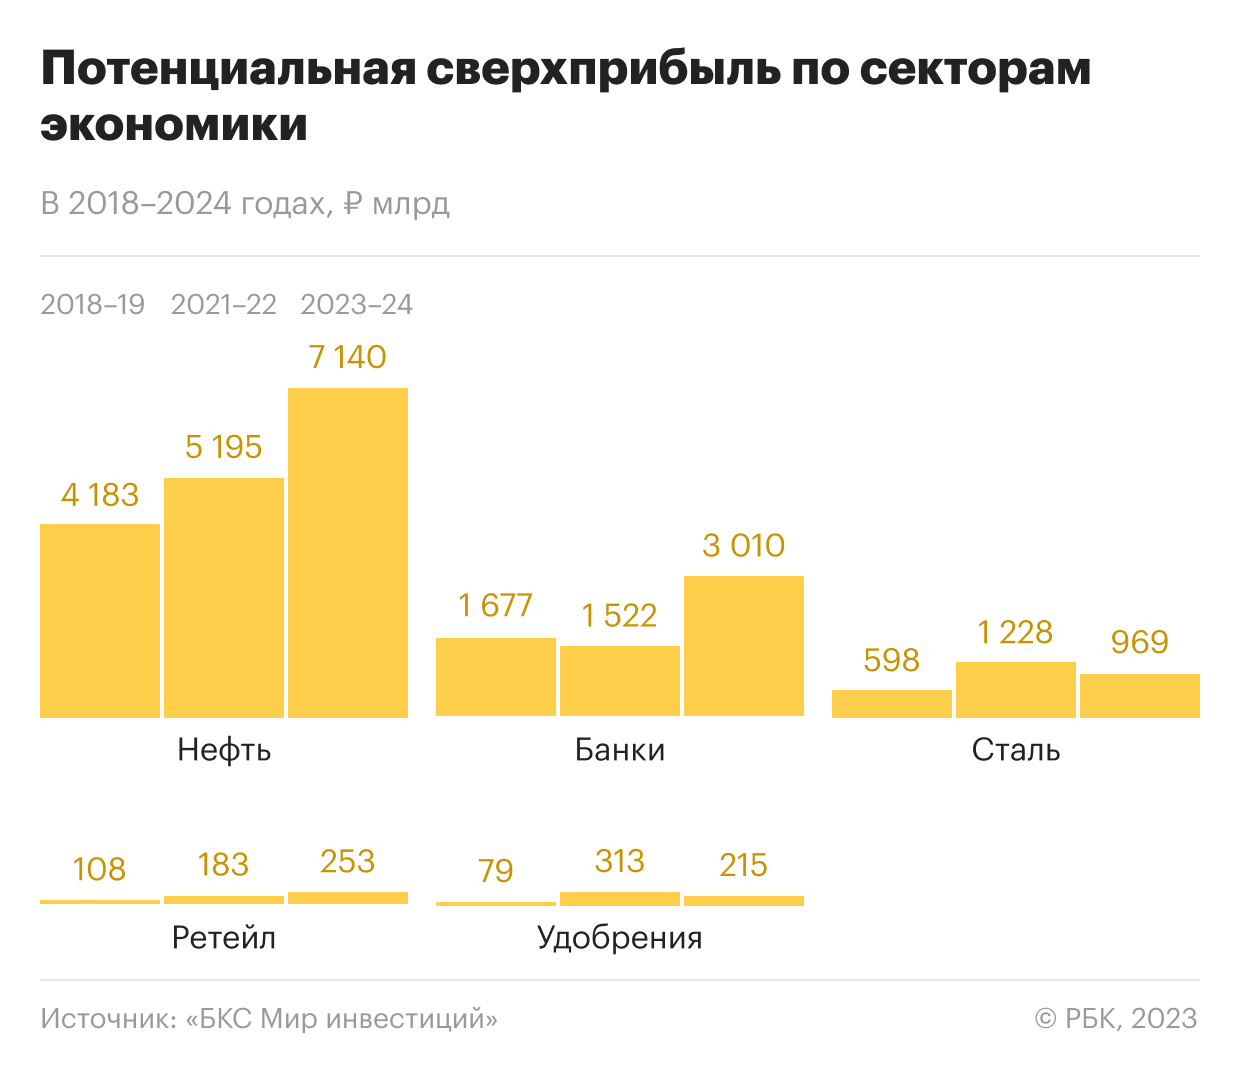 Потенциальная сверхприбыль по секторам экономики в 2018-2024 годах, млрд руб.